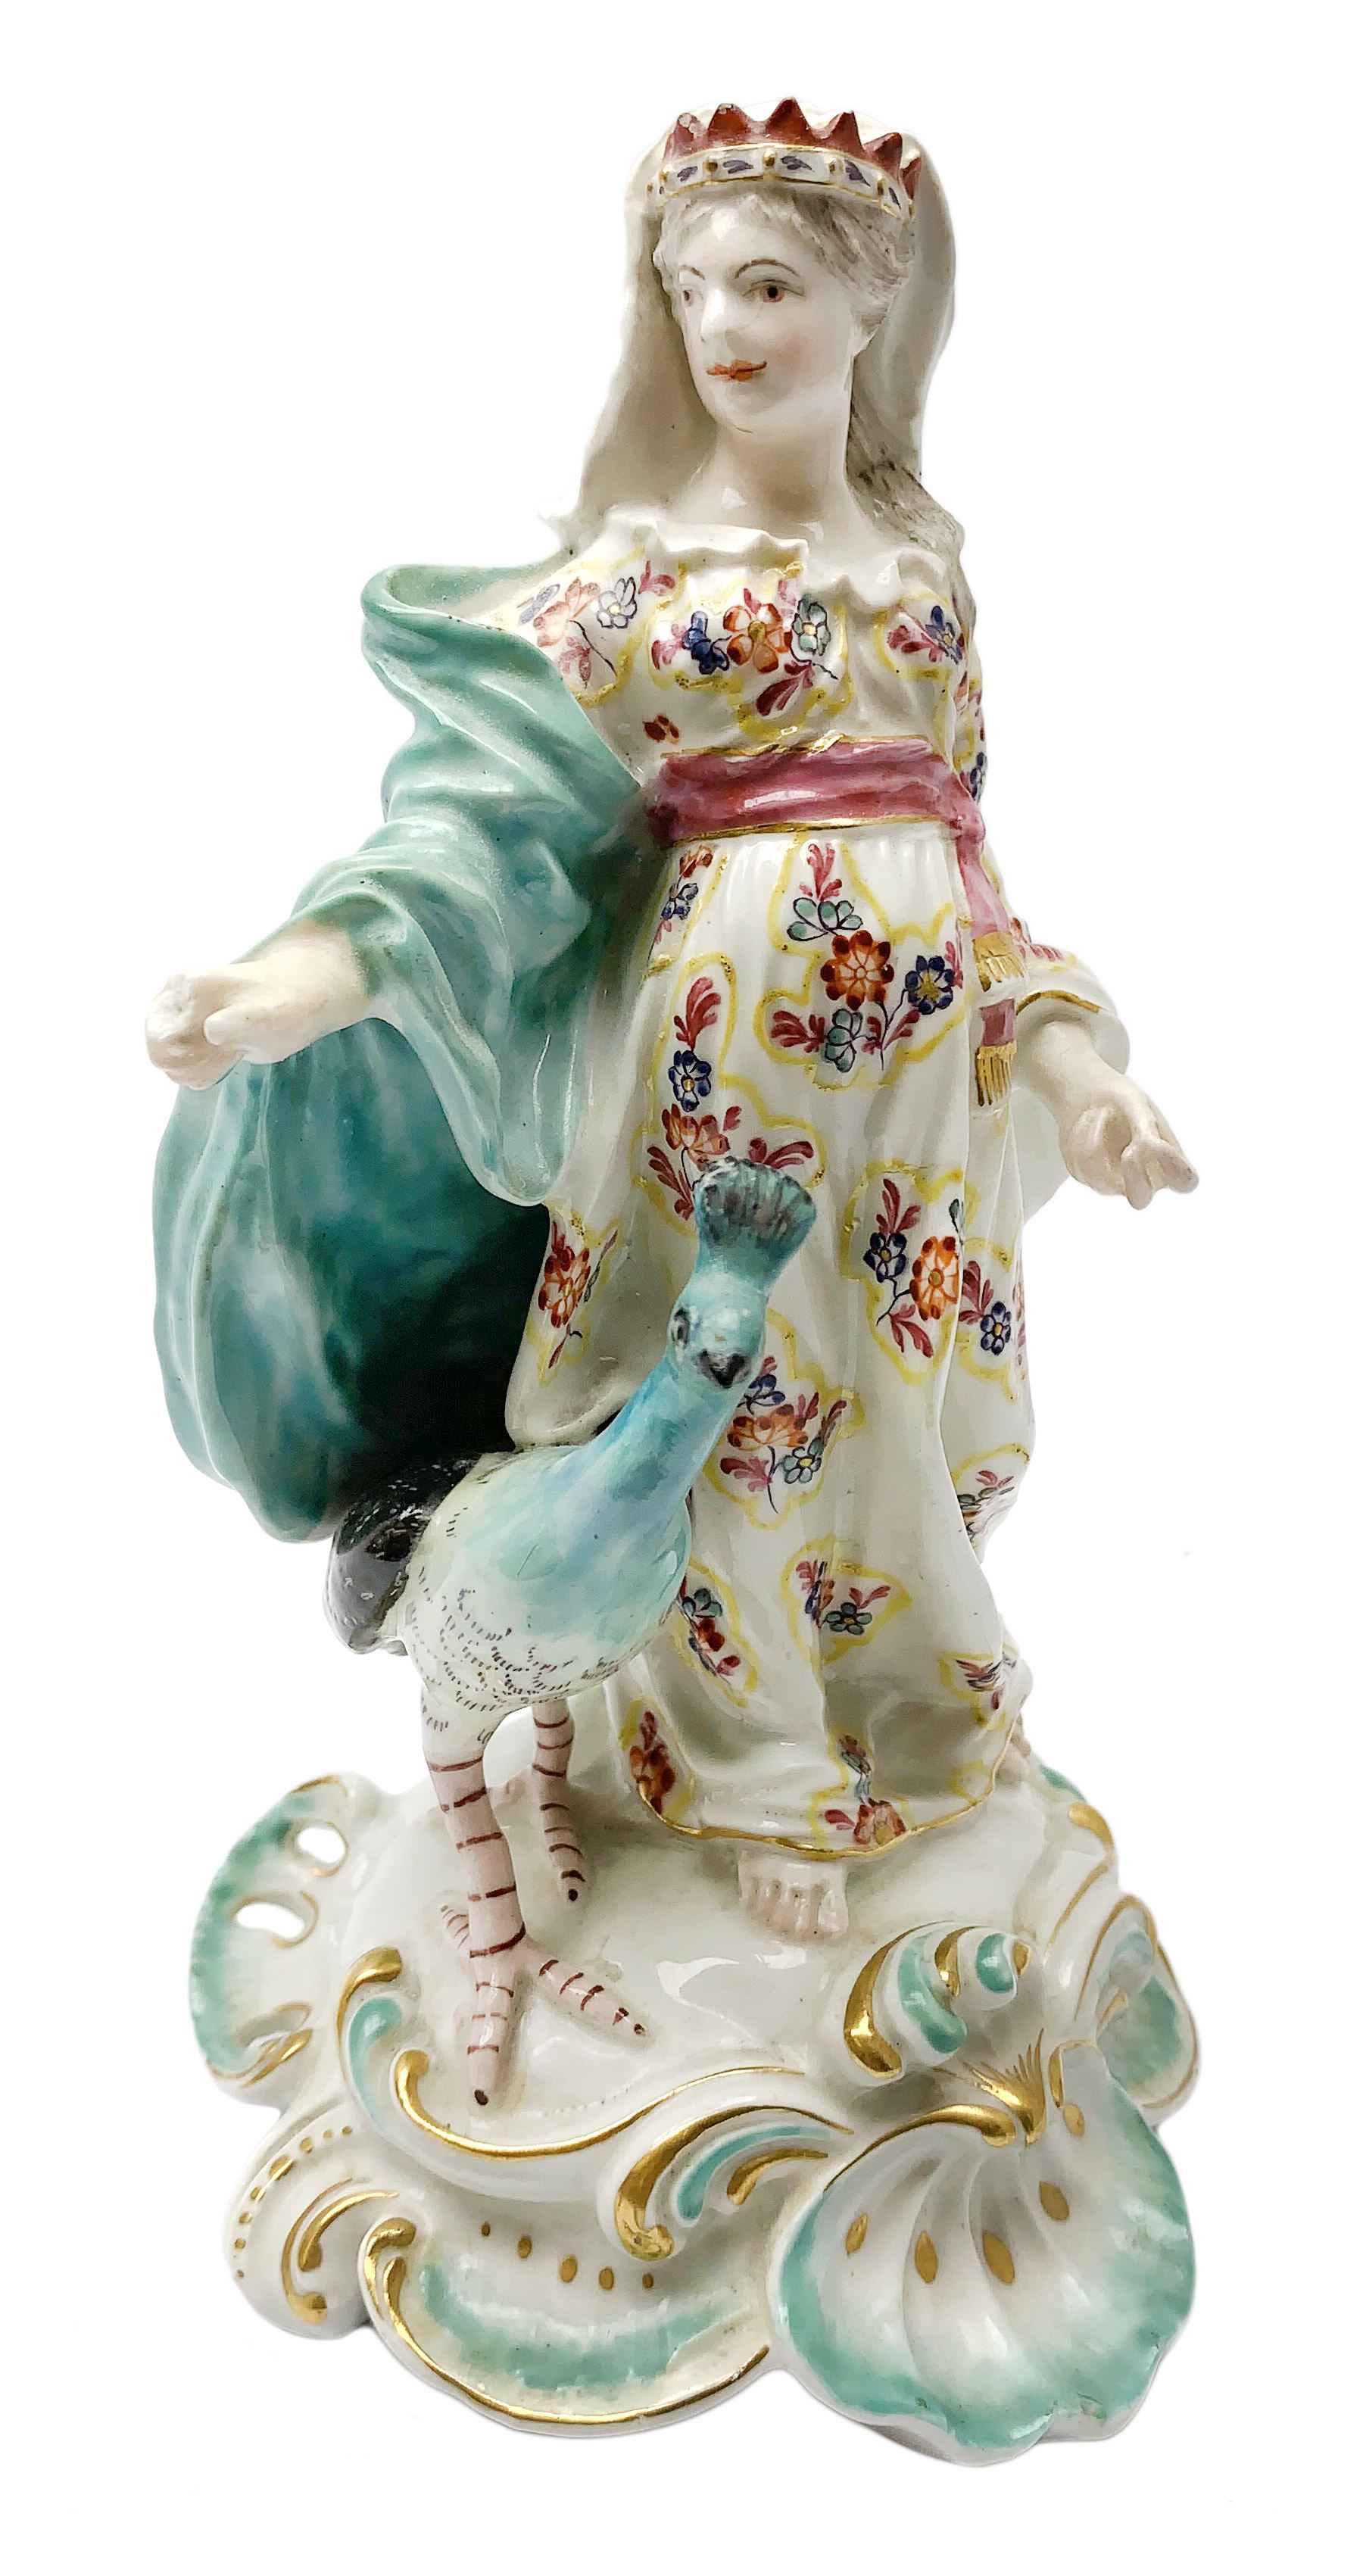 18th Century Derby porcelain figure